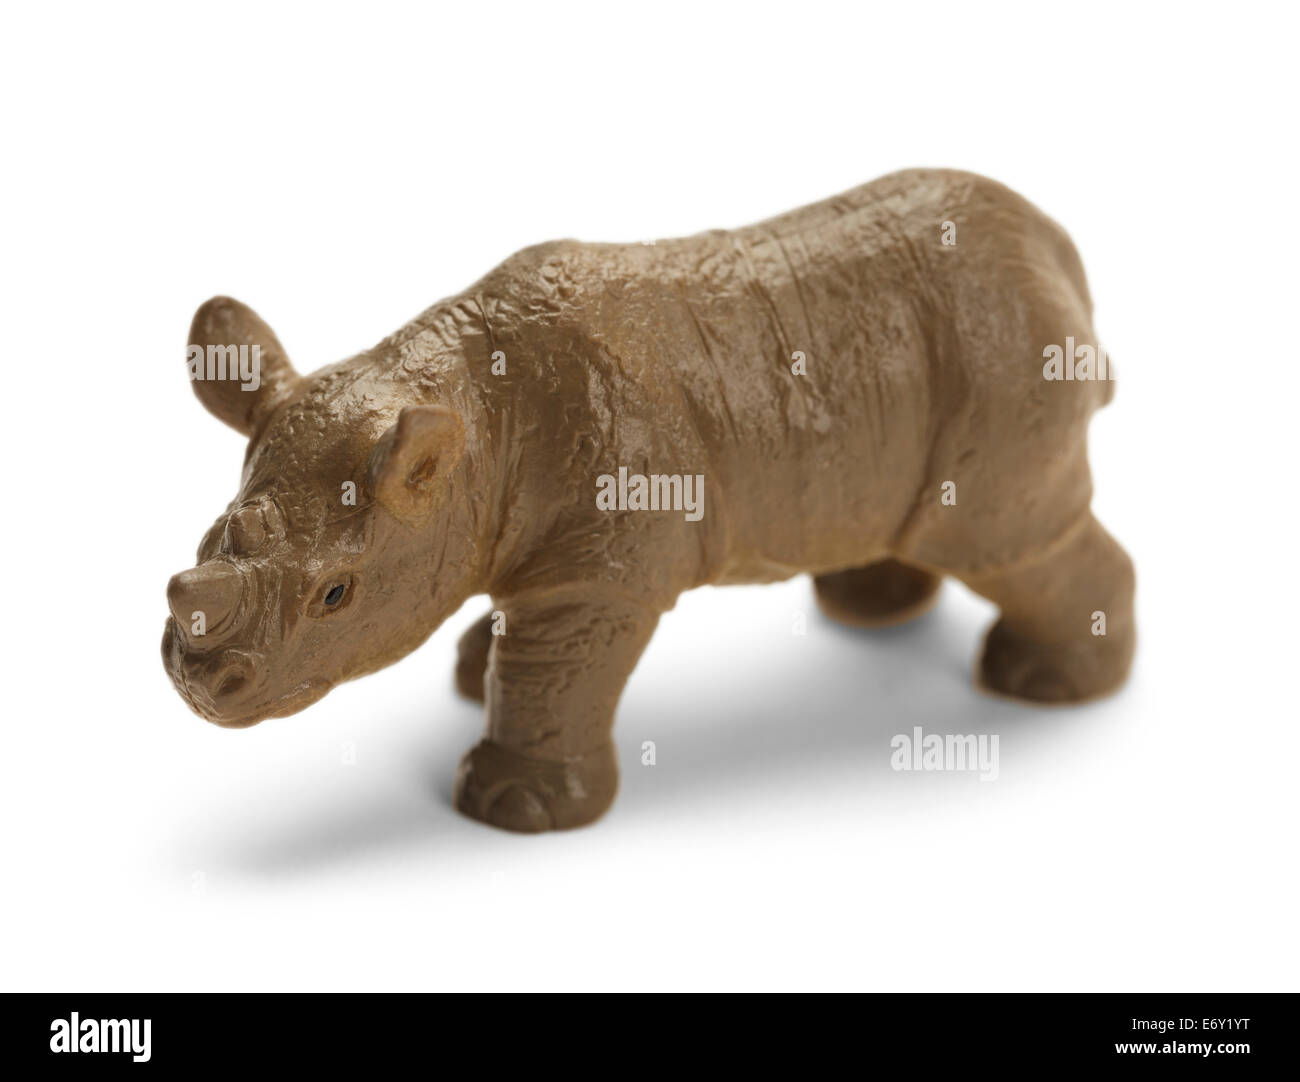 Juguete de plástico aislado de rinoceronte gris sobre fondo blanco. Foto de stock